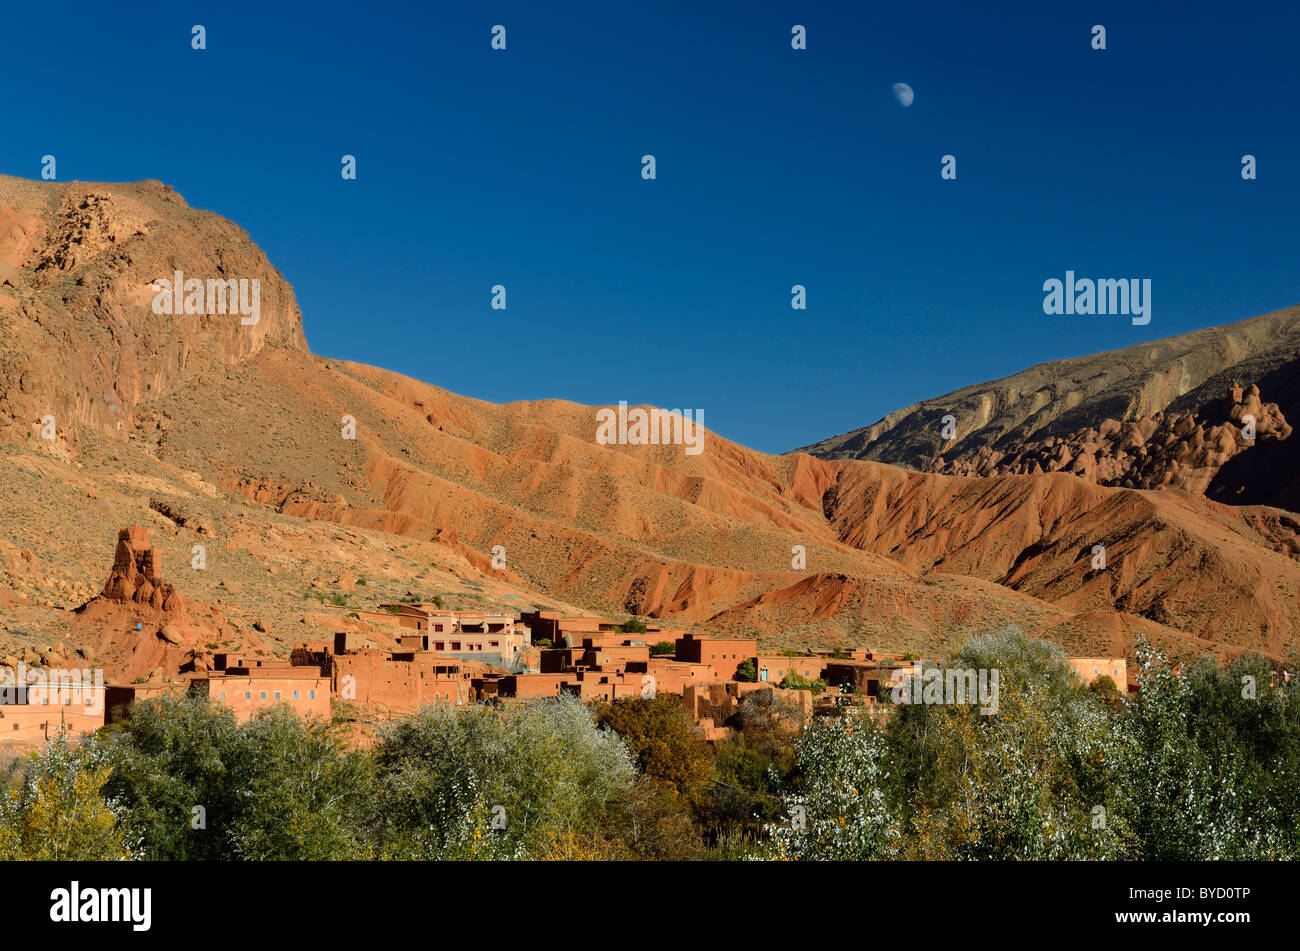 Der Mond im blauen Himmel über die rote Erde und die Felsformationen in der Dades-schlucht Marokko Stockfoto